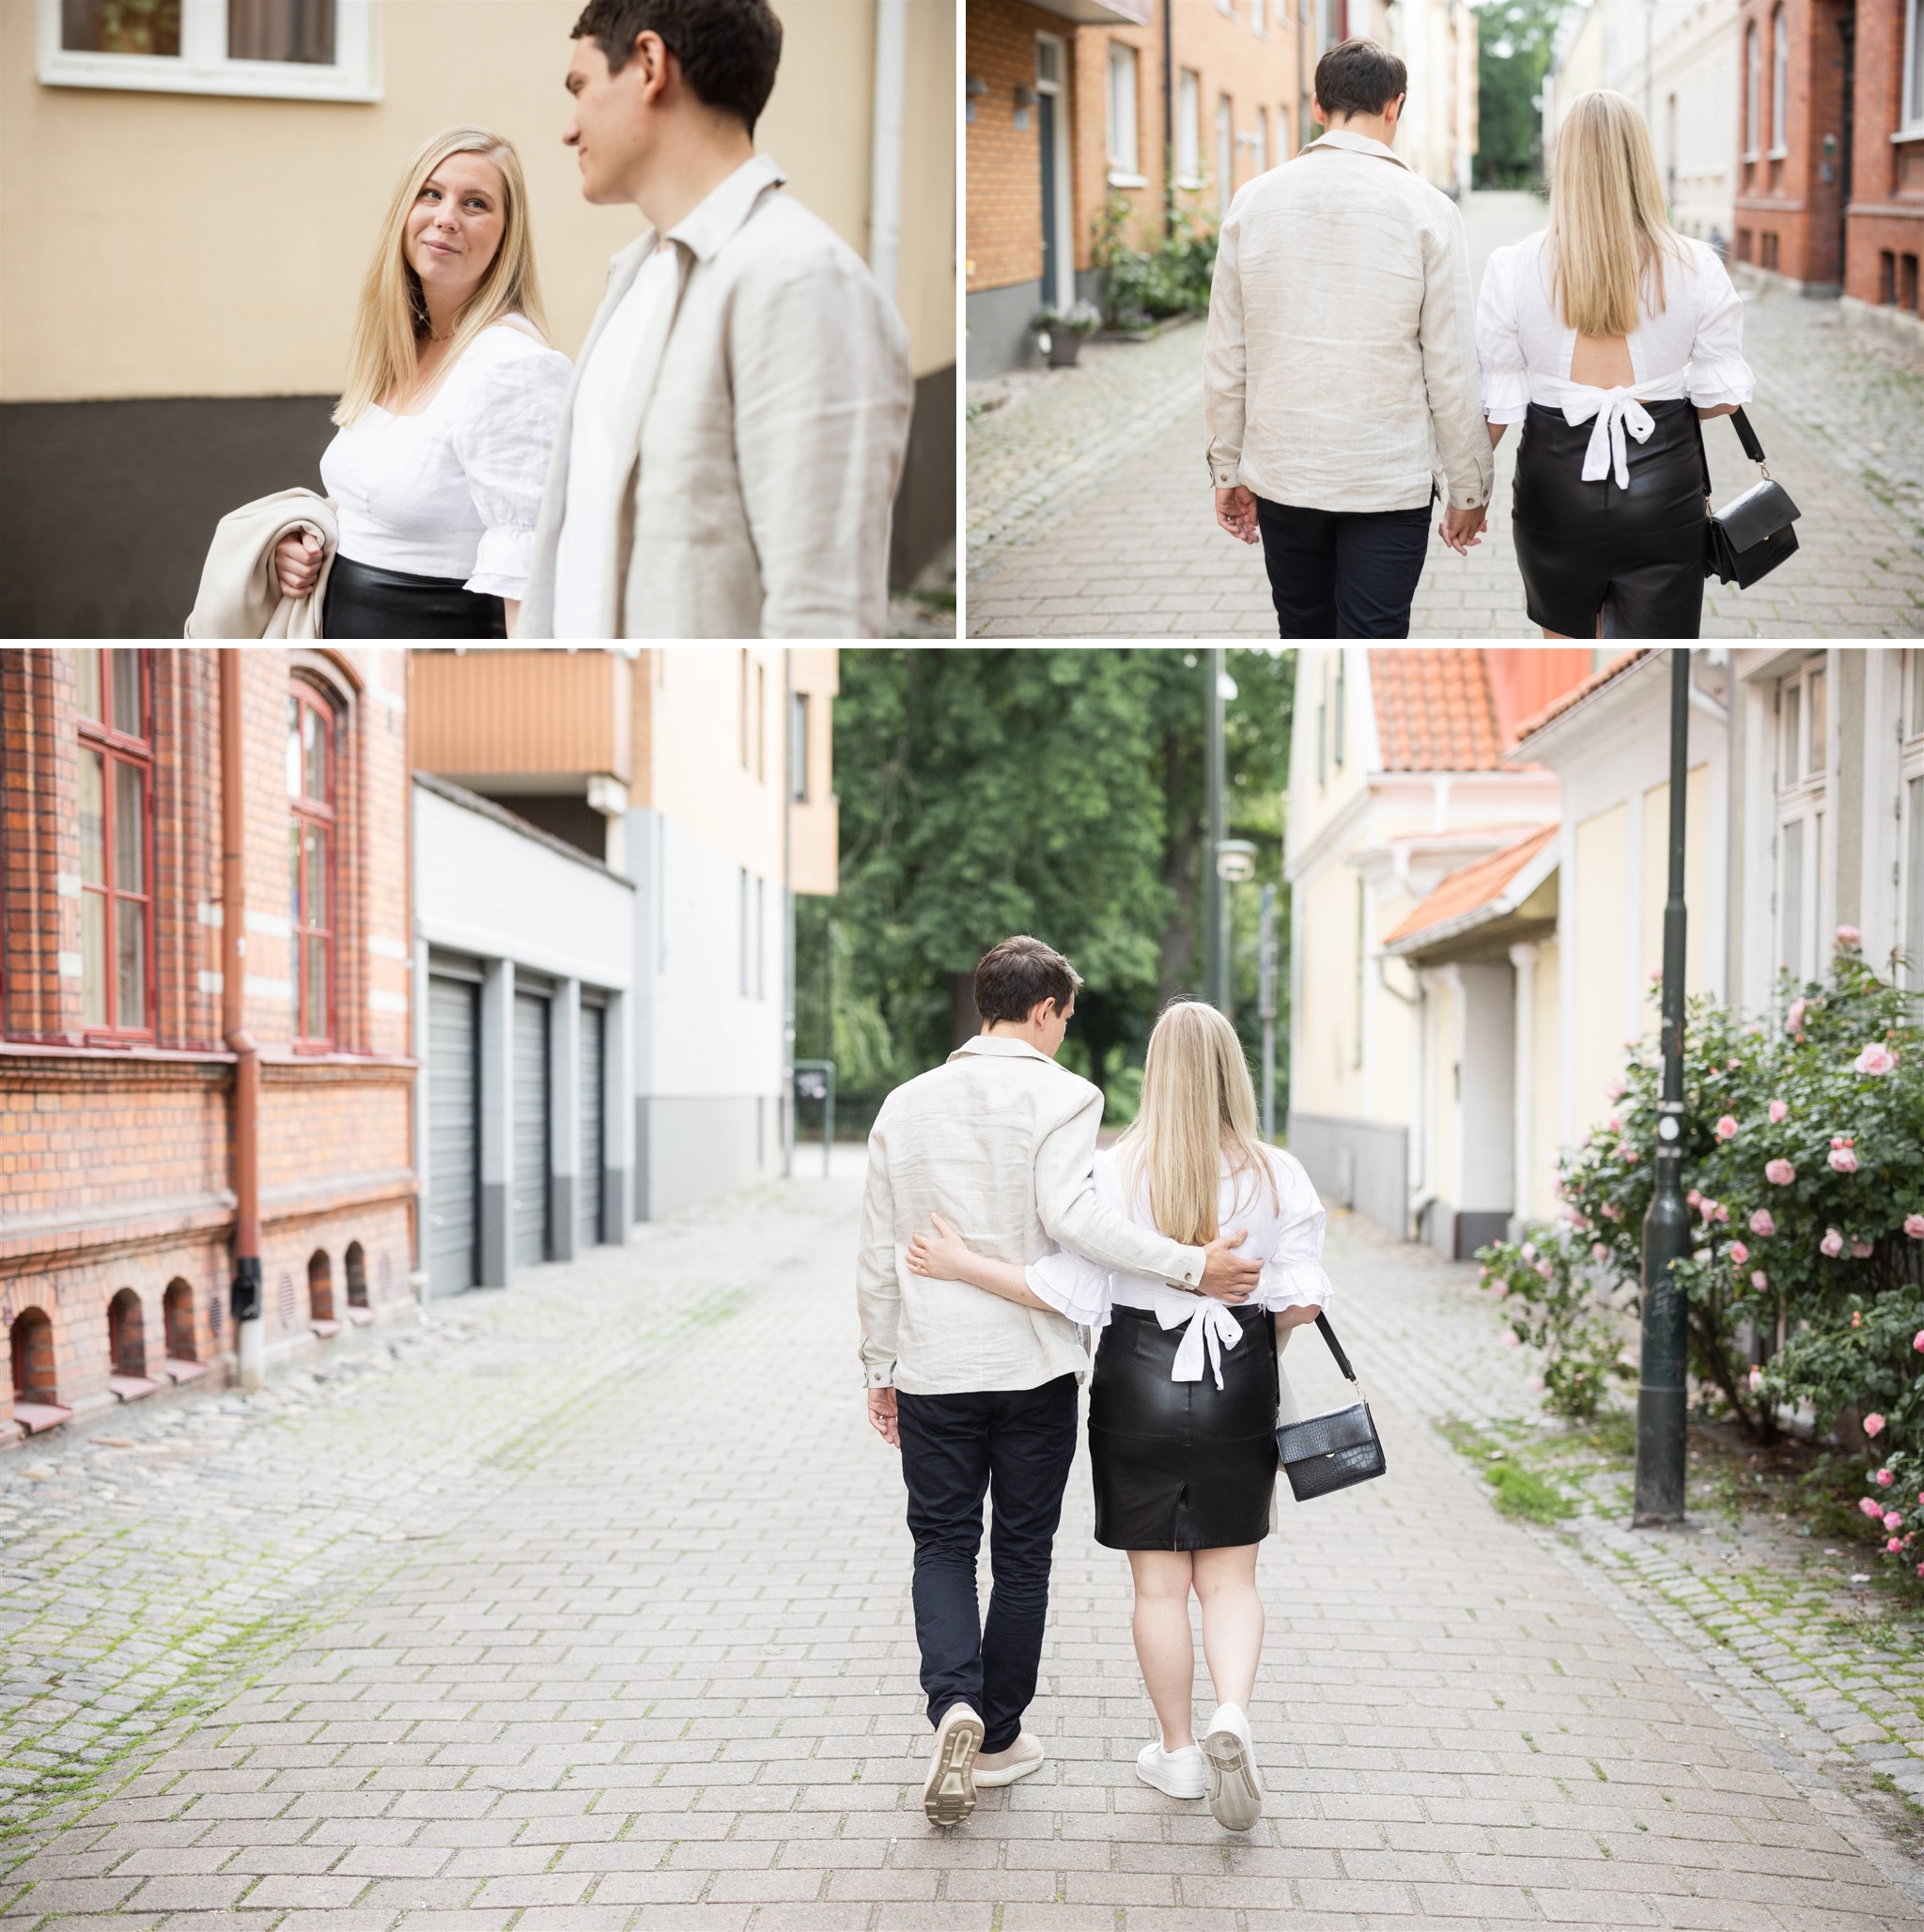 Porträttfotografering i Gamla Staden i Malmö tillsammans med ett brudpar under deras parfotografering inför bröllopet. Foto: Tove Lundquist.